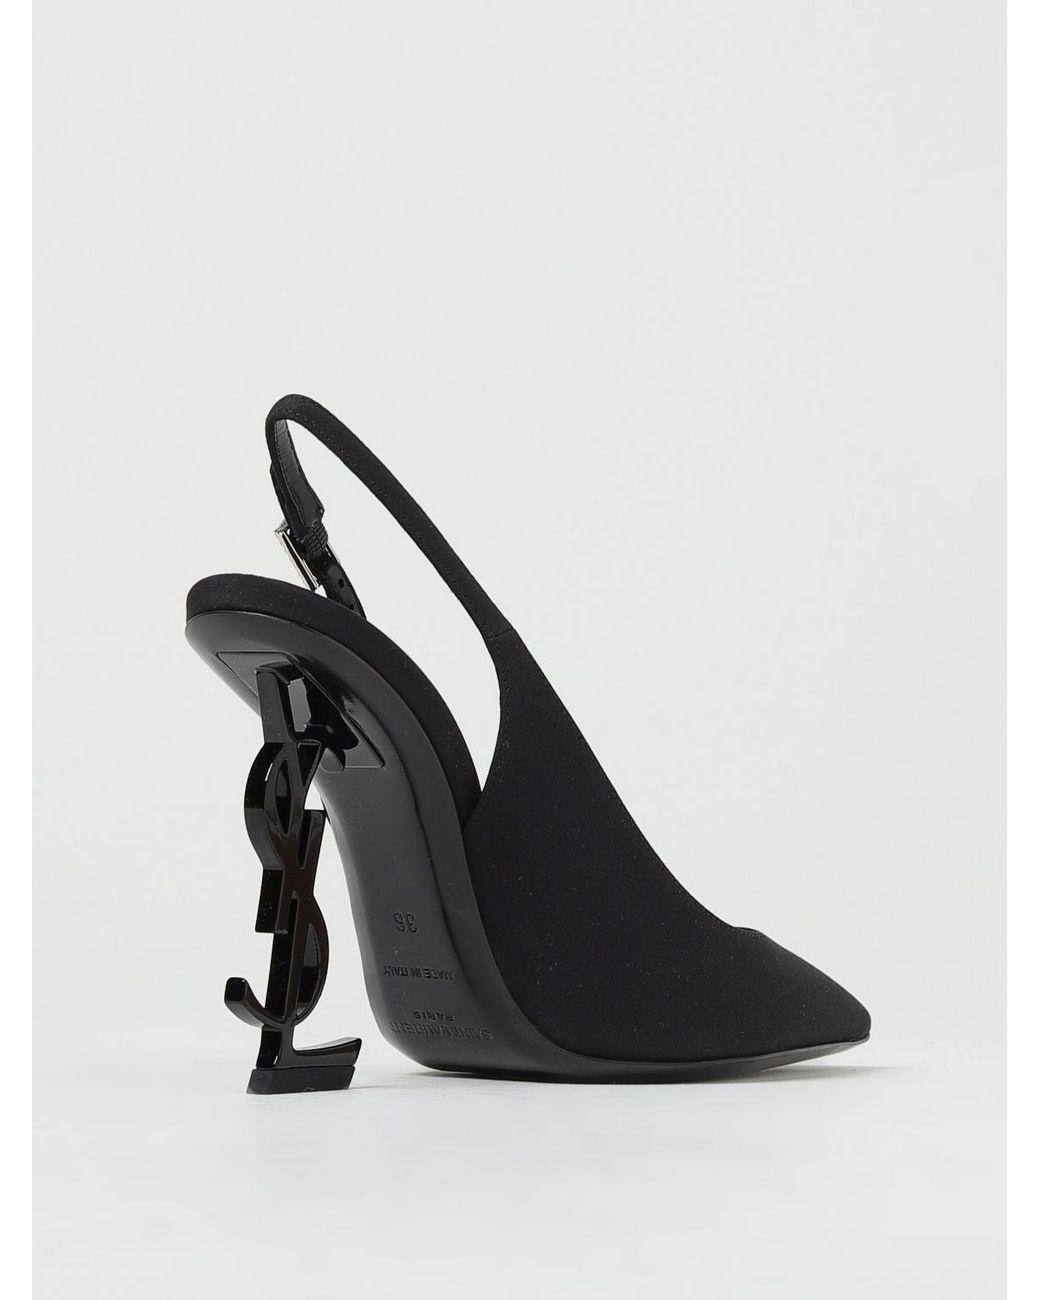 Vintage Shoes YSL Yves Saint Laurent Heels Pumps Shoes Size 8 US - Etsy  Finland